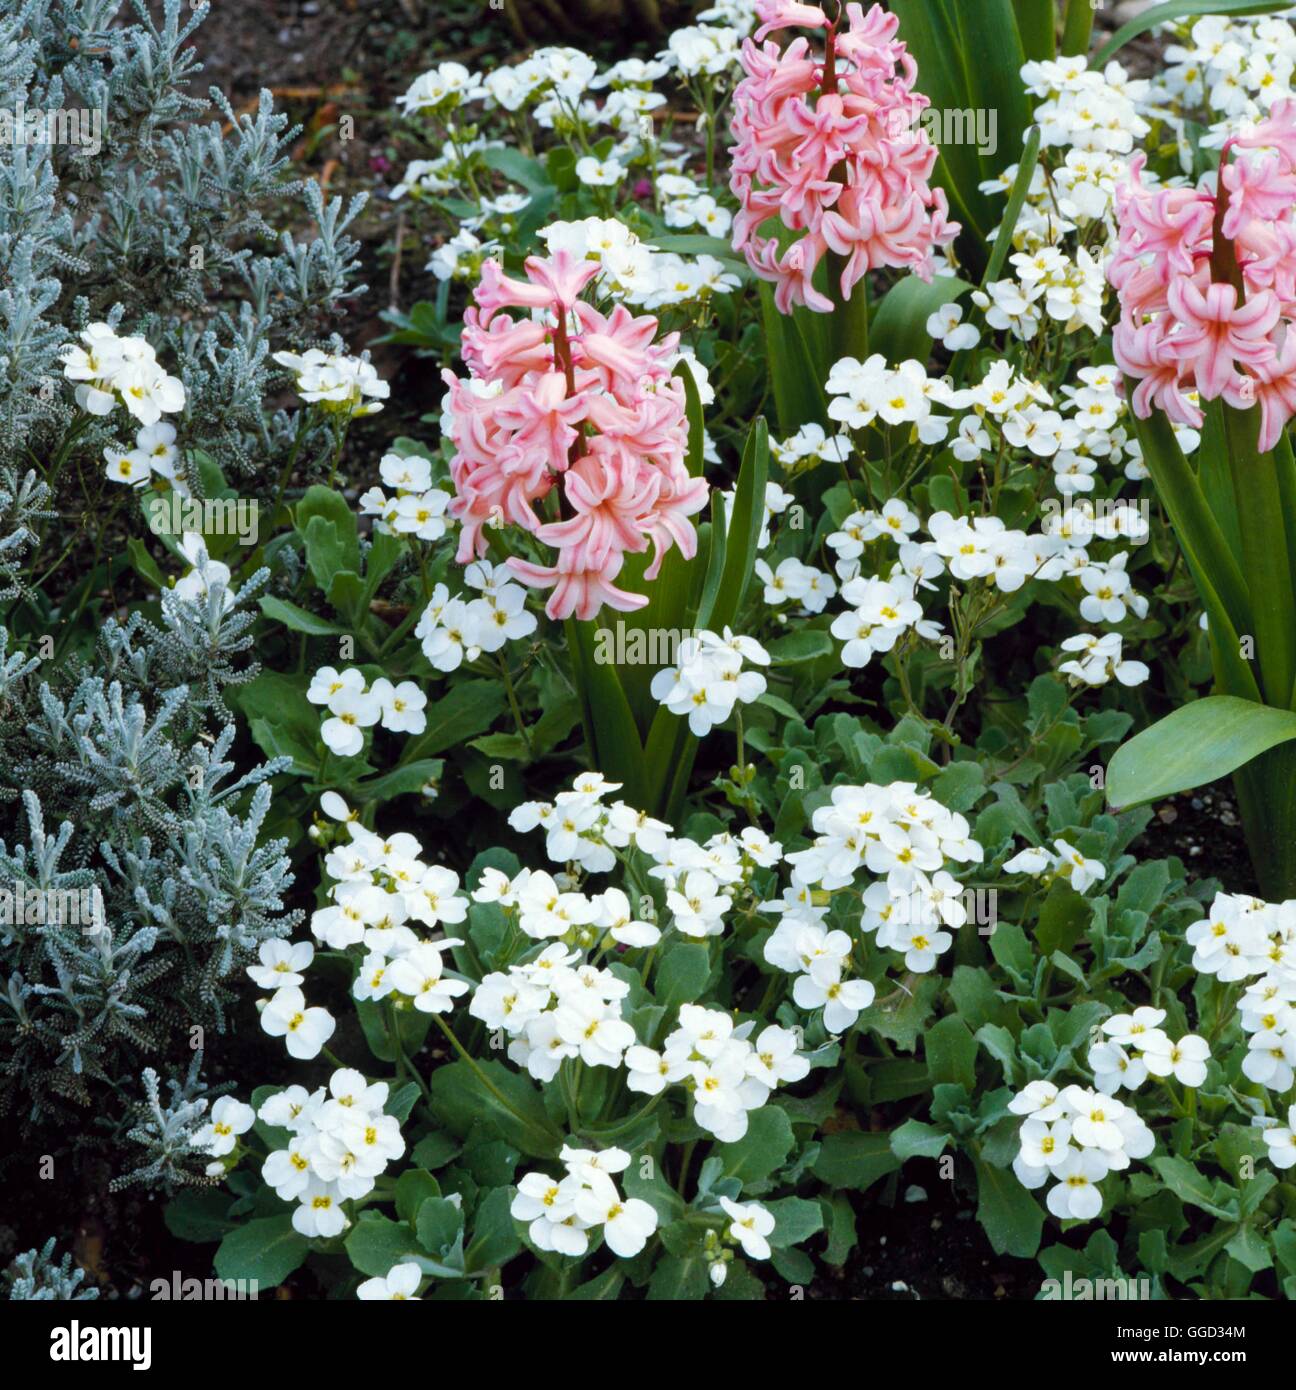 Arabis alpina - subsp. caucasica `Snowdrop'   ALP033540 Stock Photo